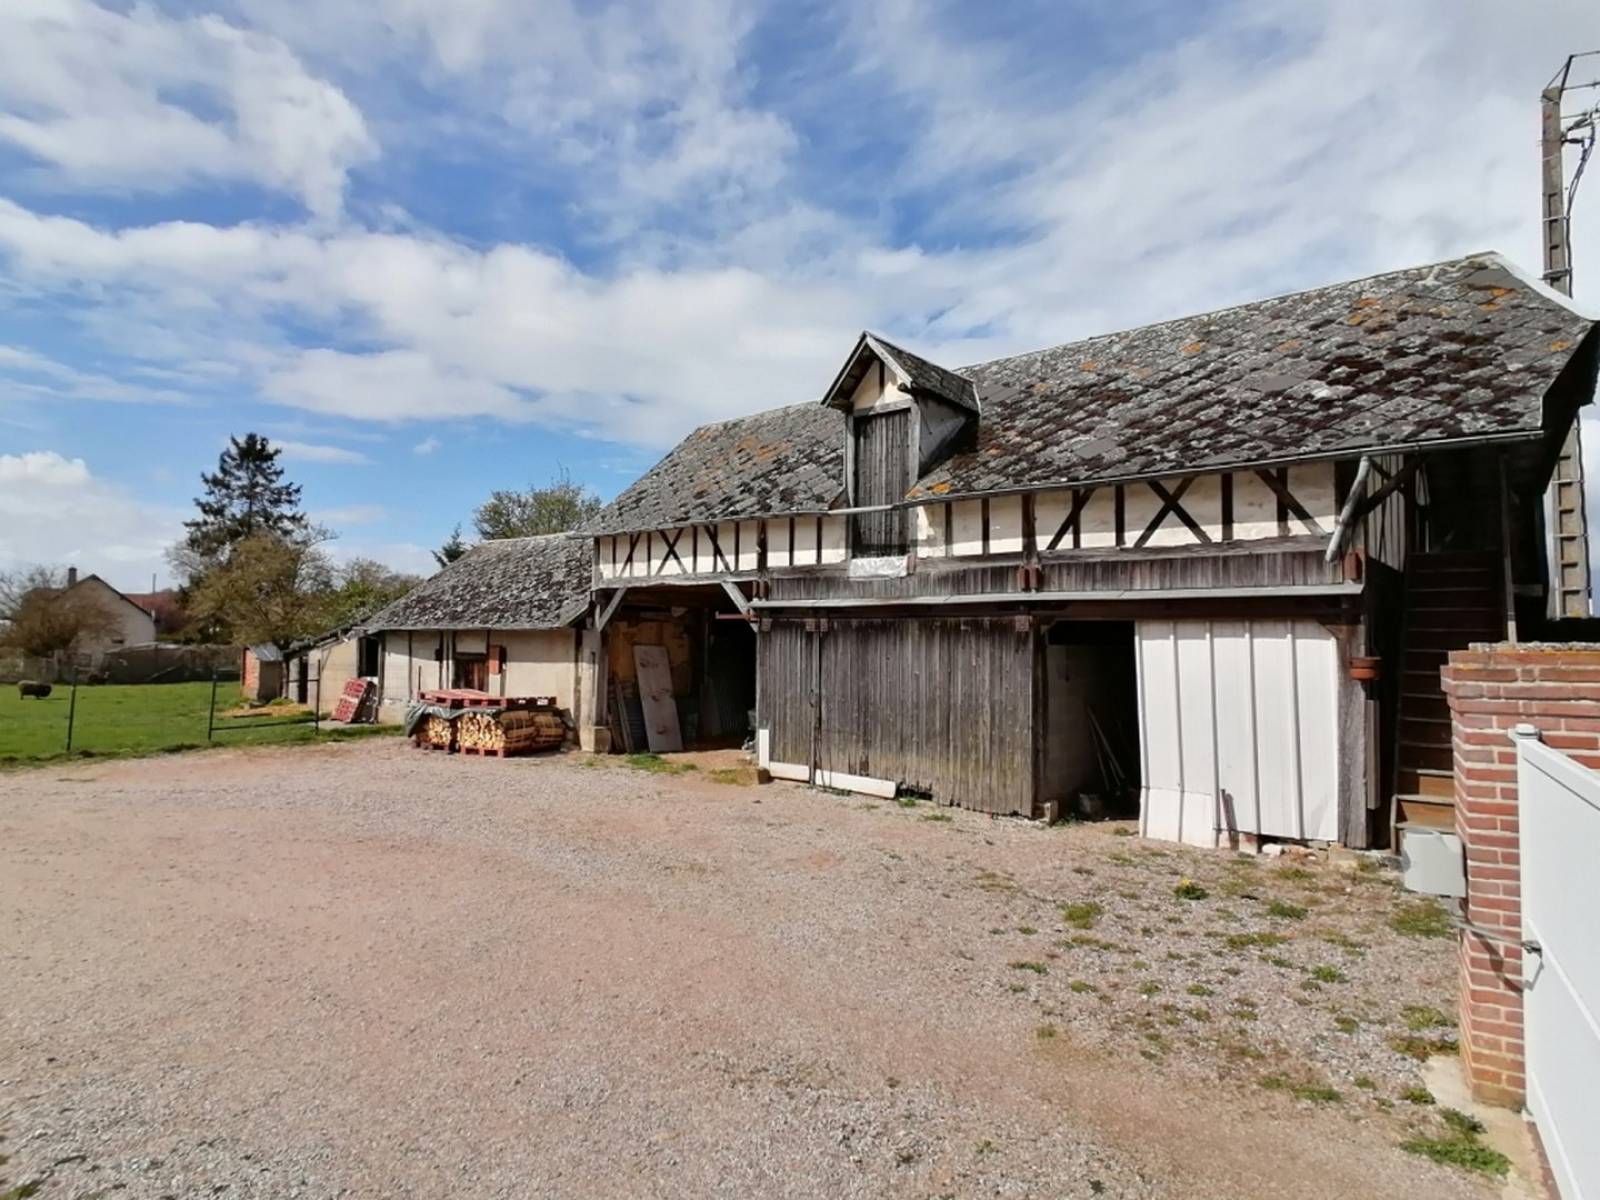 Maison normande à vendre près du Neubourg dans un village calme  sans travaux à prévoir